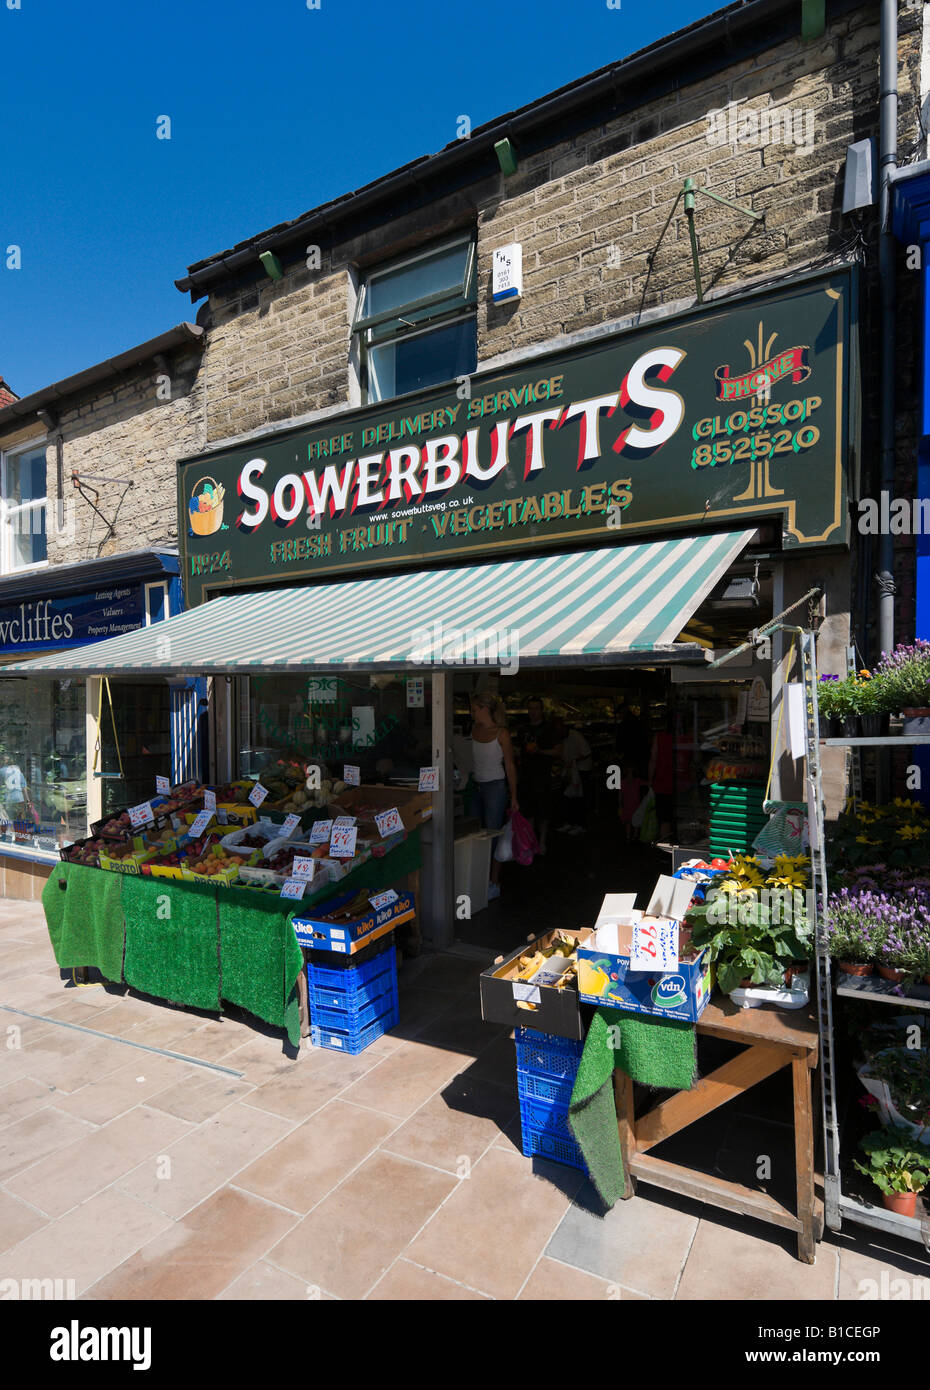 Gemüsehändler Shop im Stadtzentrum, Glossop, Peak District in Derbyshire, England, Vereinigtes Königreich Stockfoto